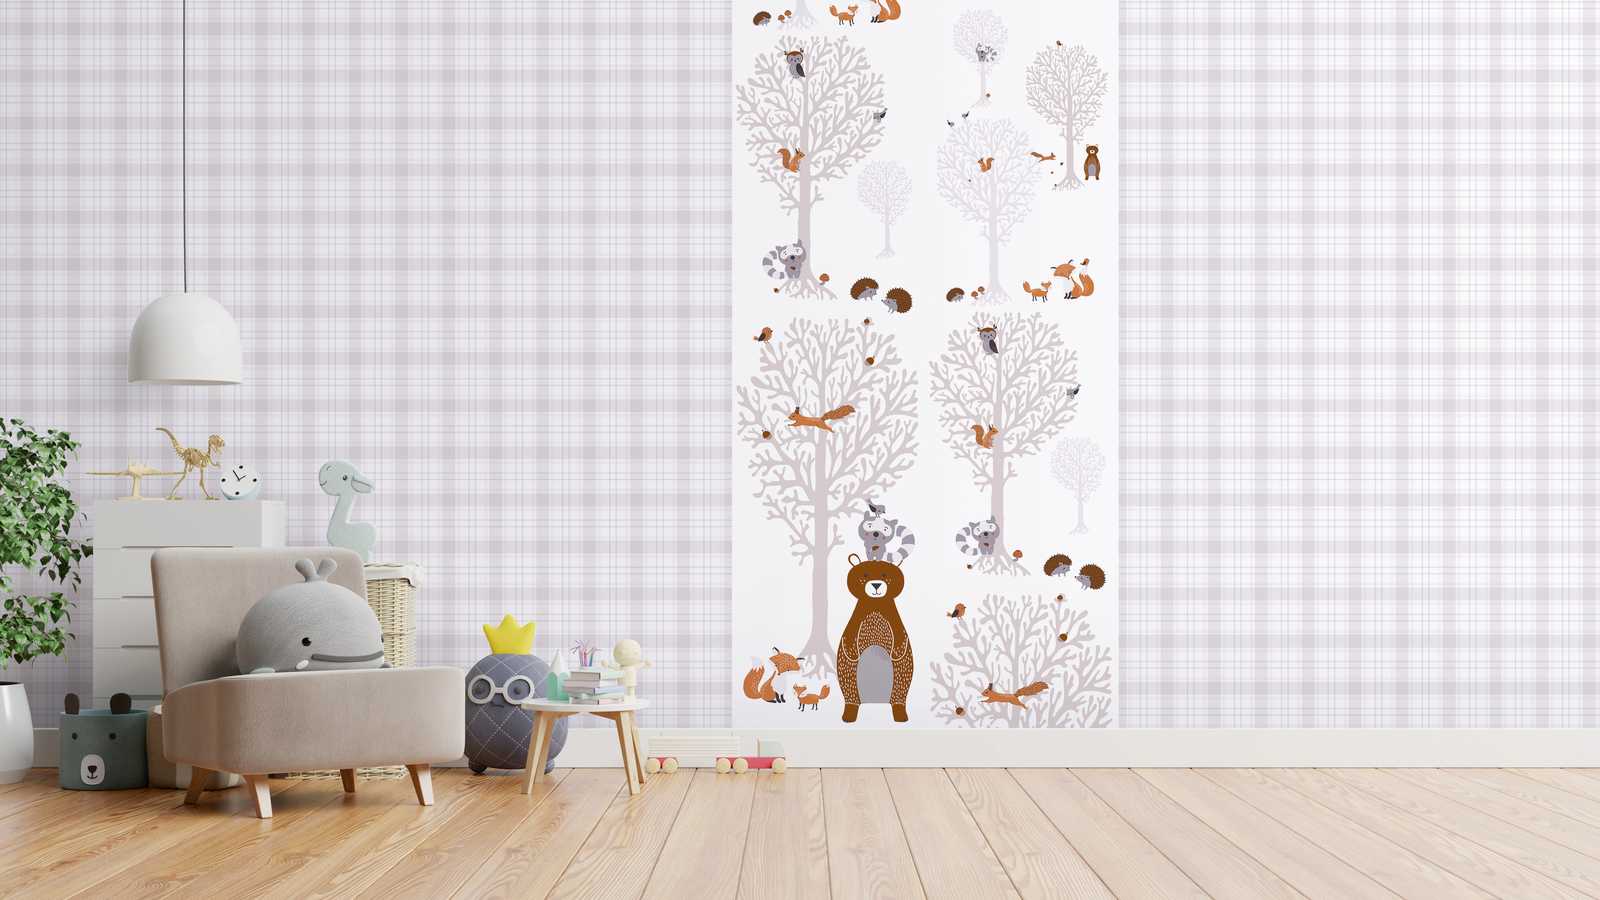             Papel pintado de habitación de niña animales del bosque - marrón, gris, blanco
        